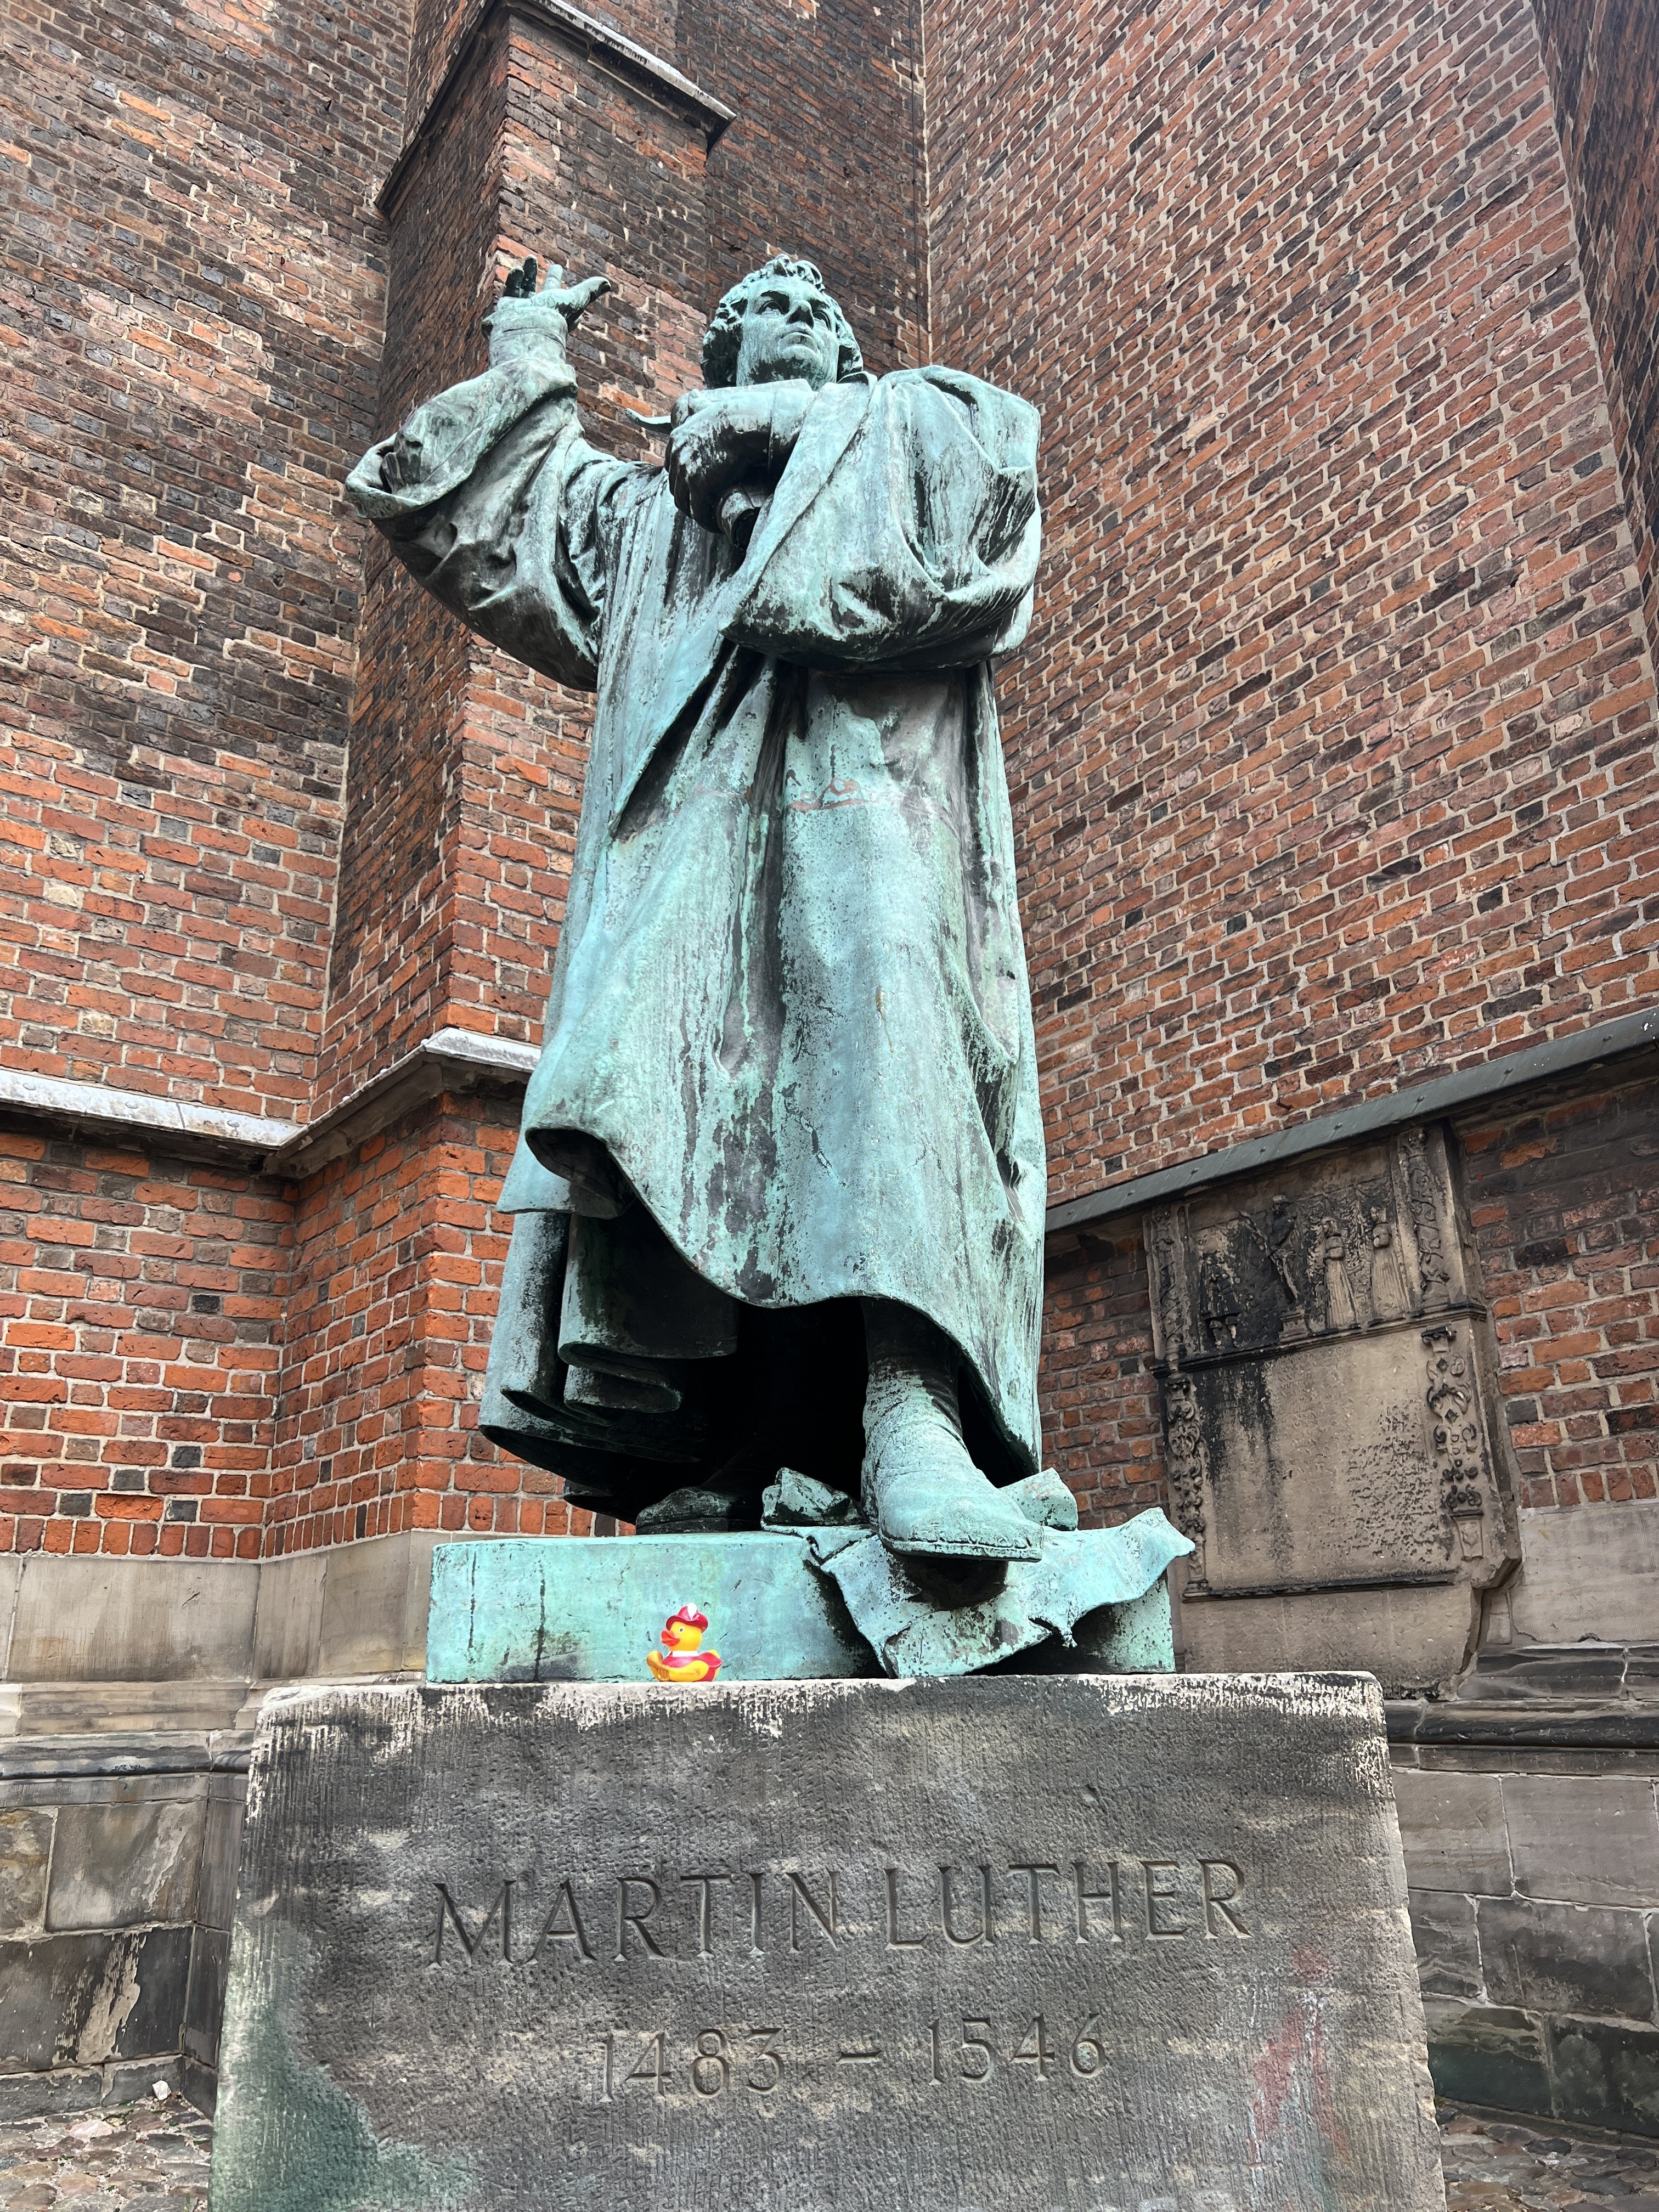  Werner und Martin Luther, Hannover (Deutschland) 